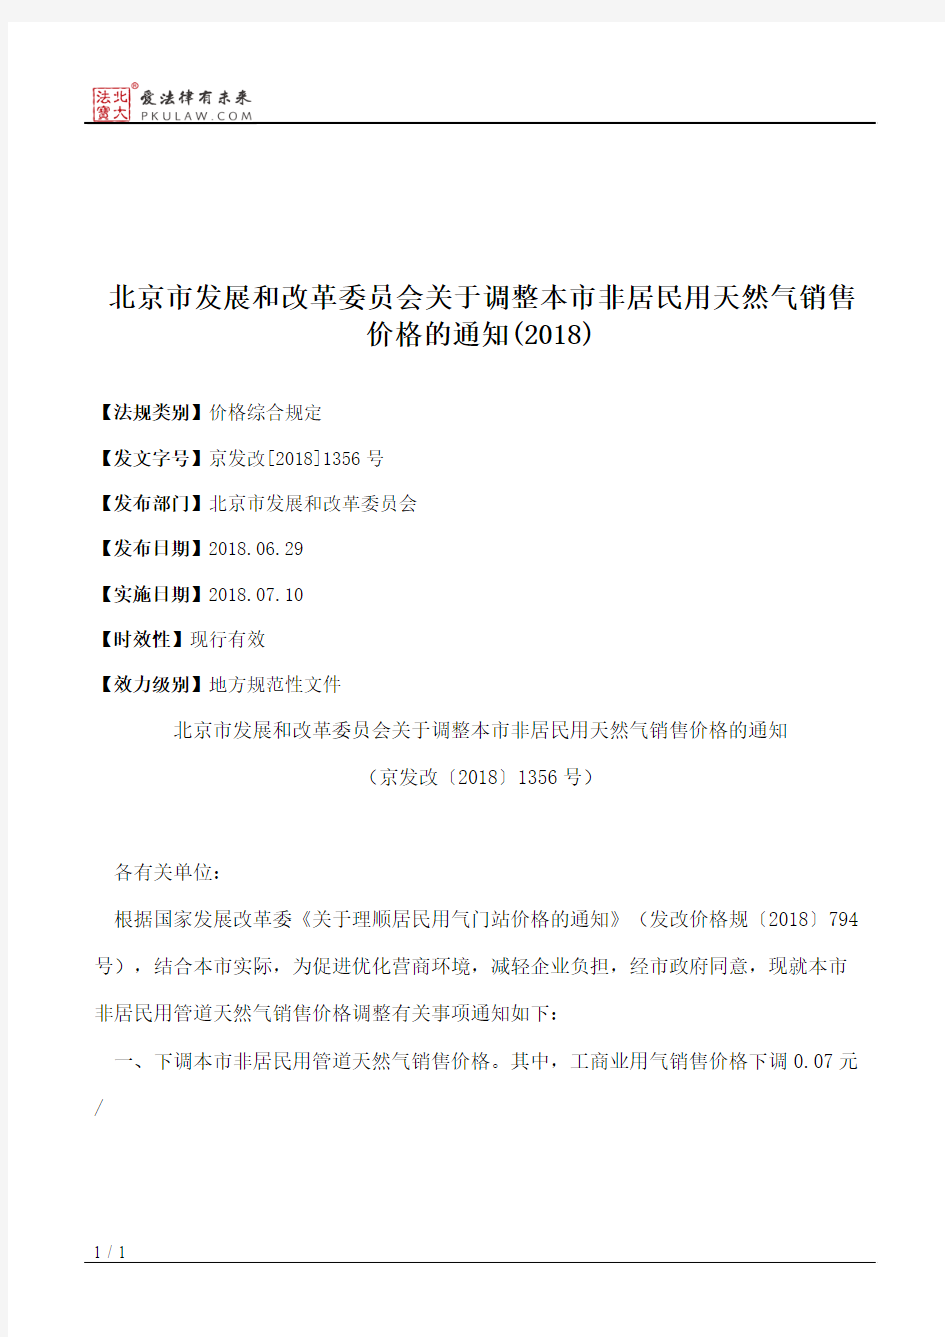 北京市发展和改革委员会关于调整本市非居民用天然气销售价格的通知(2018)